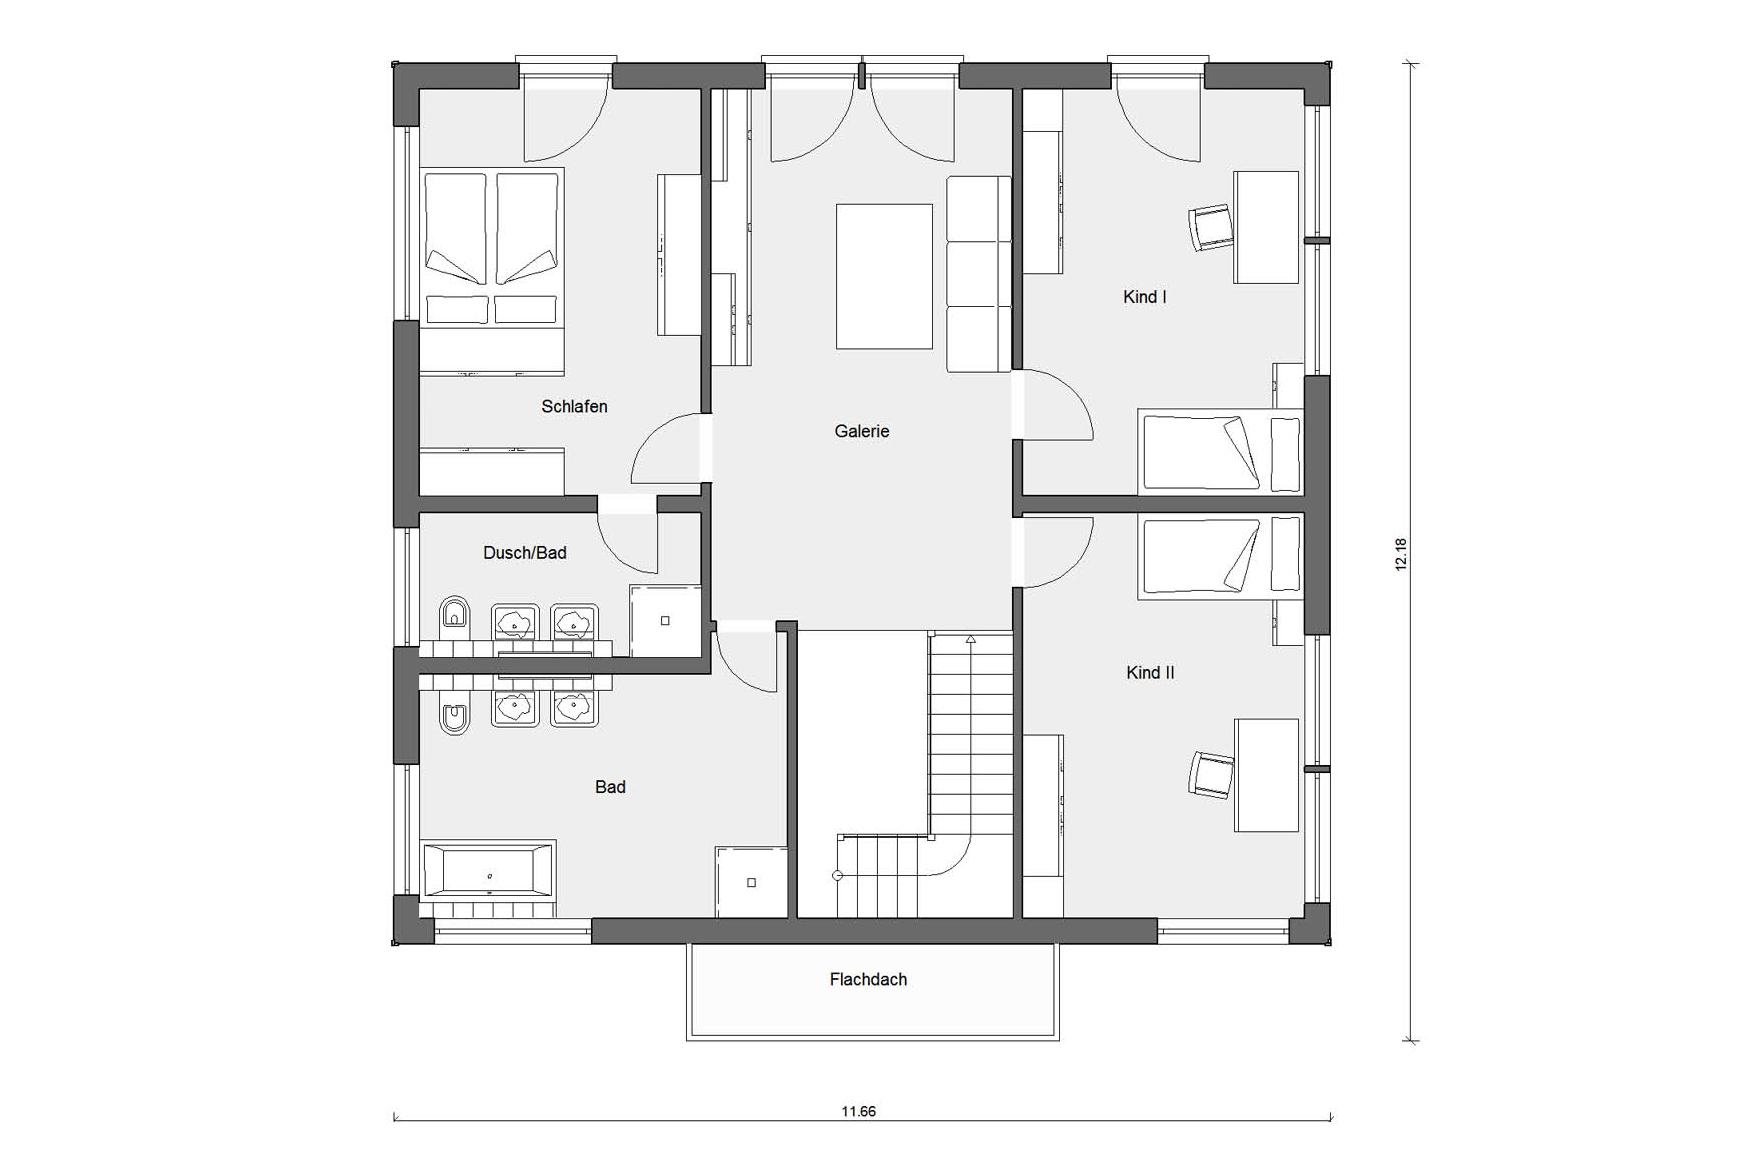 Pianta soffitta E 20-250.1 Casa con facciata lamellare